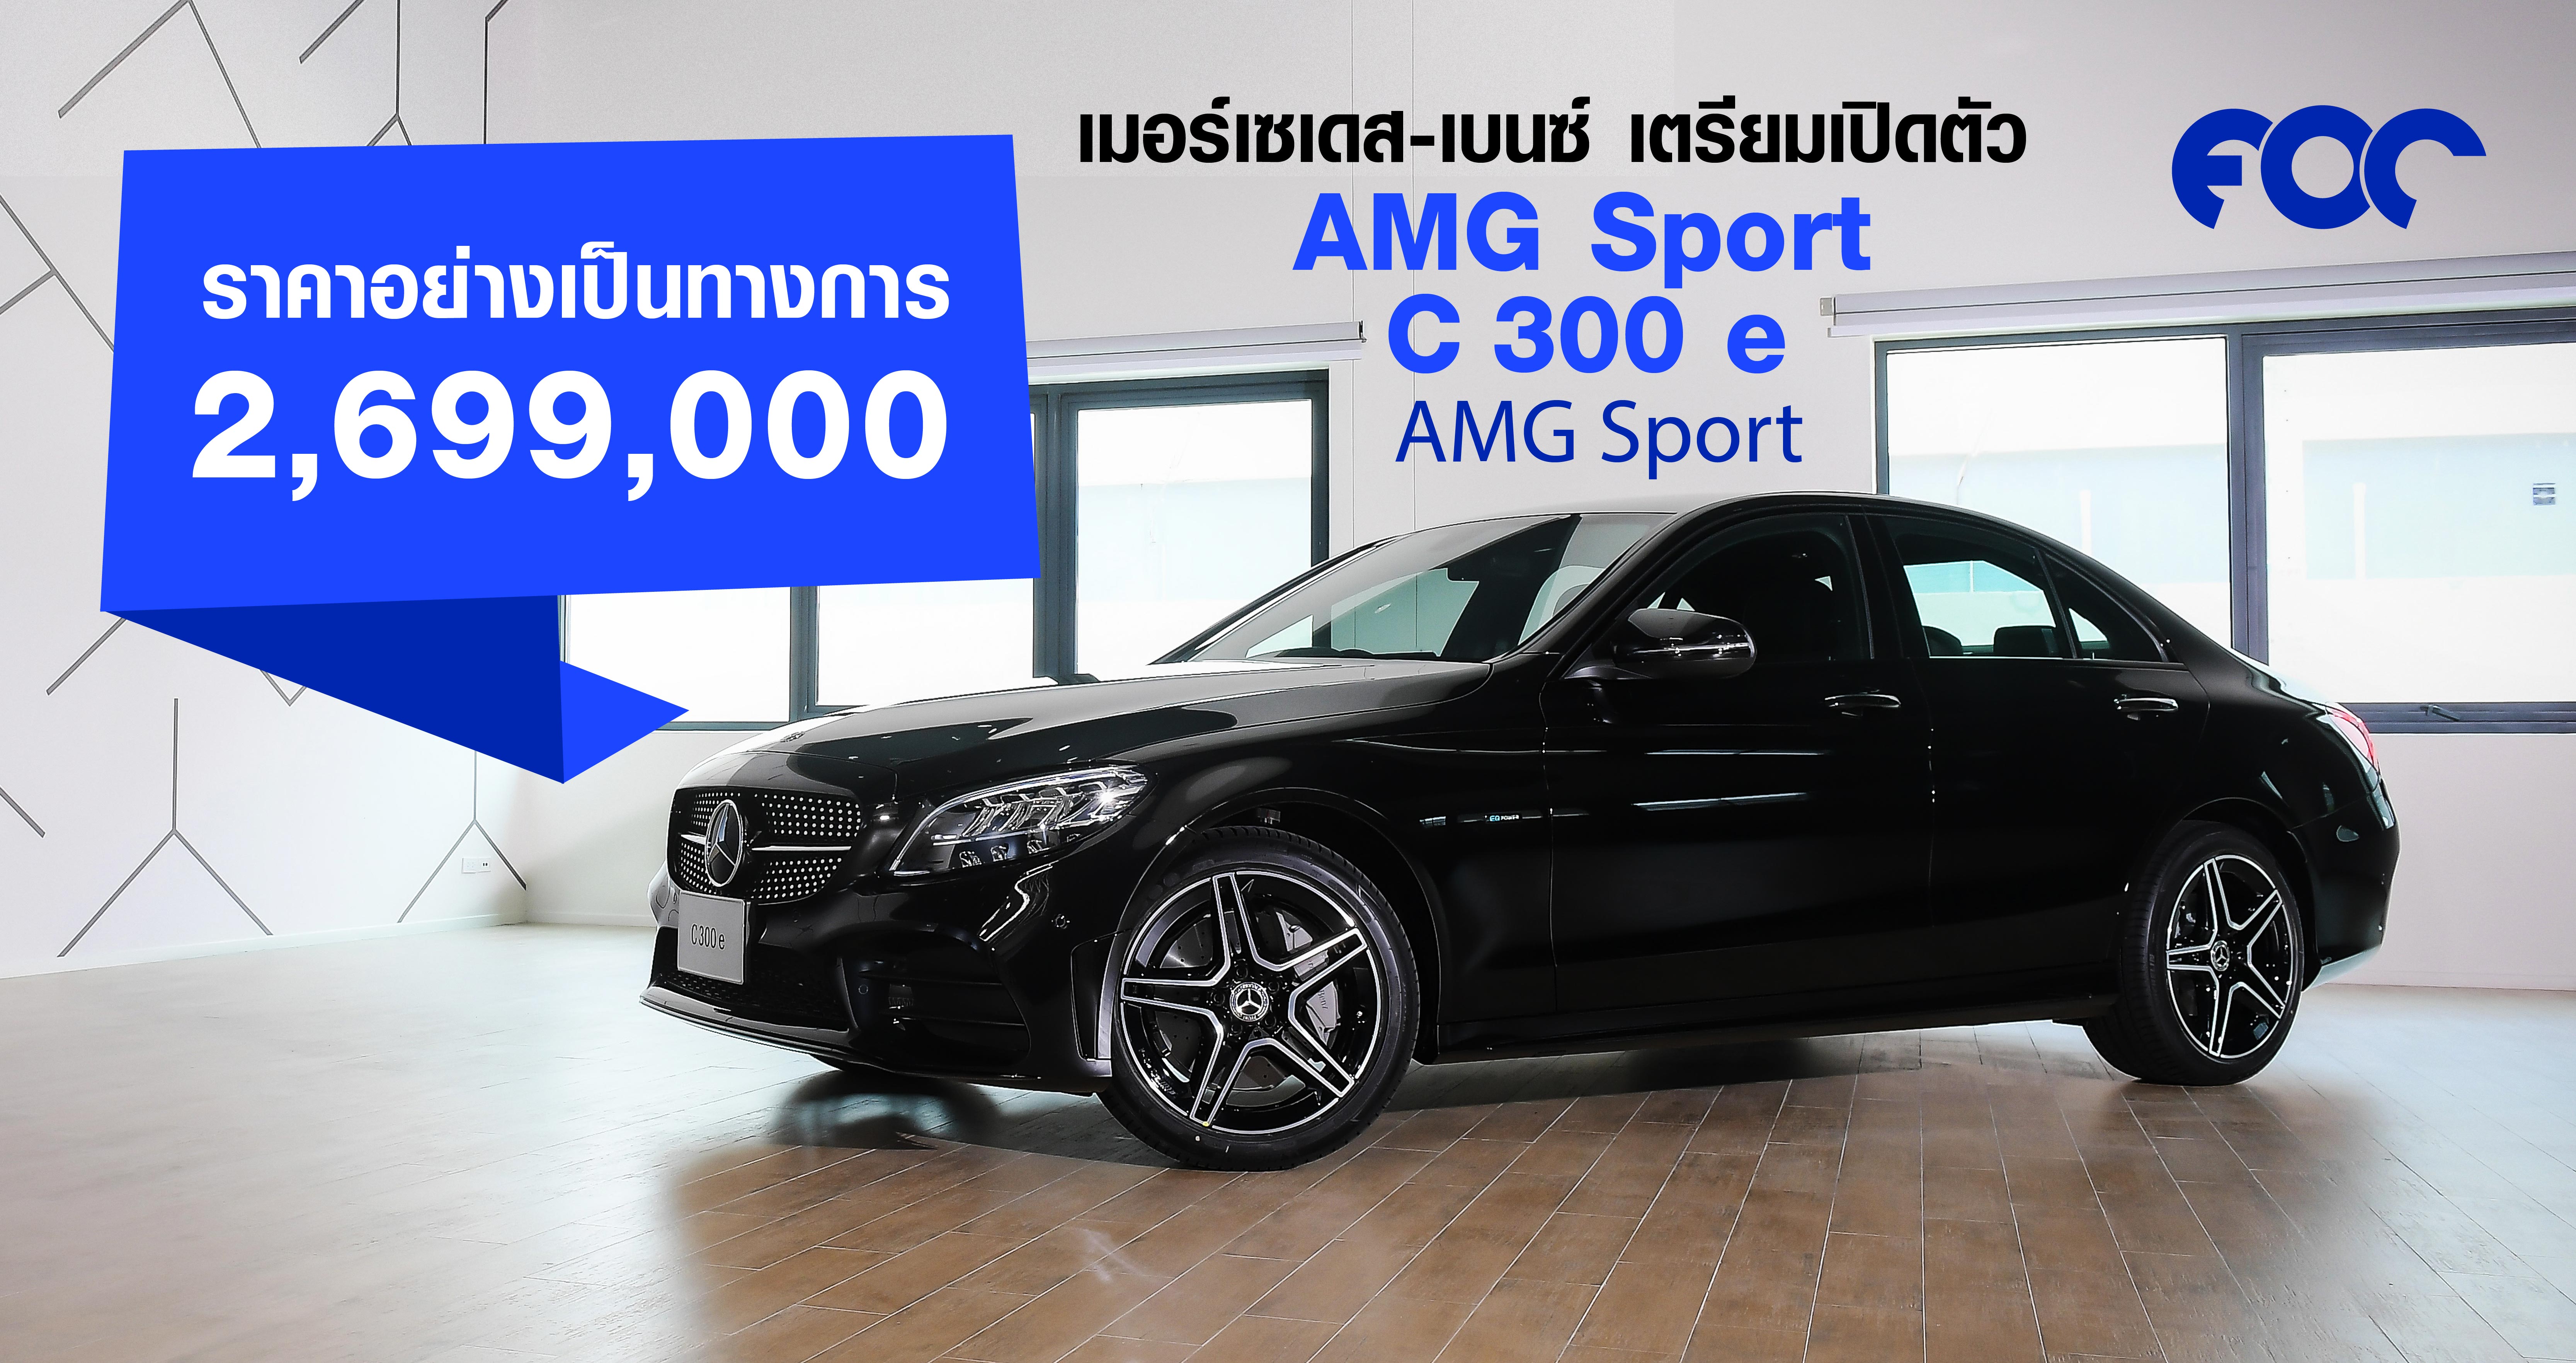 Mercedes-Benz C 300 e AMG Sport ราคาอย่างเป็นทางการ 2,699,000 บาท